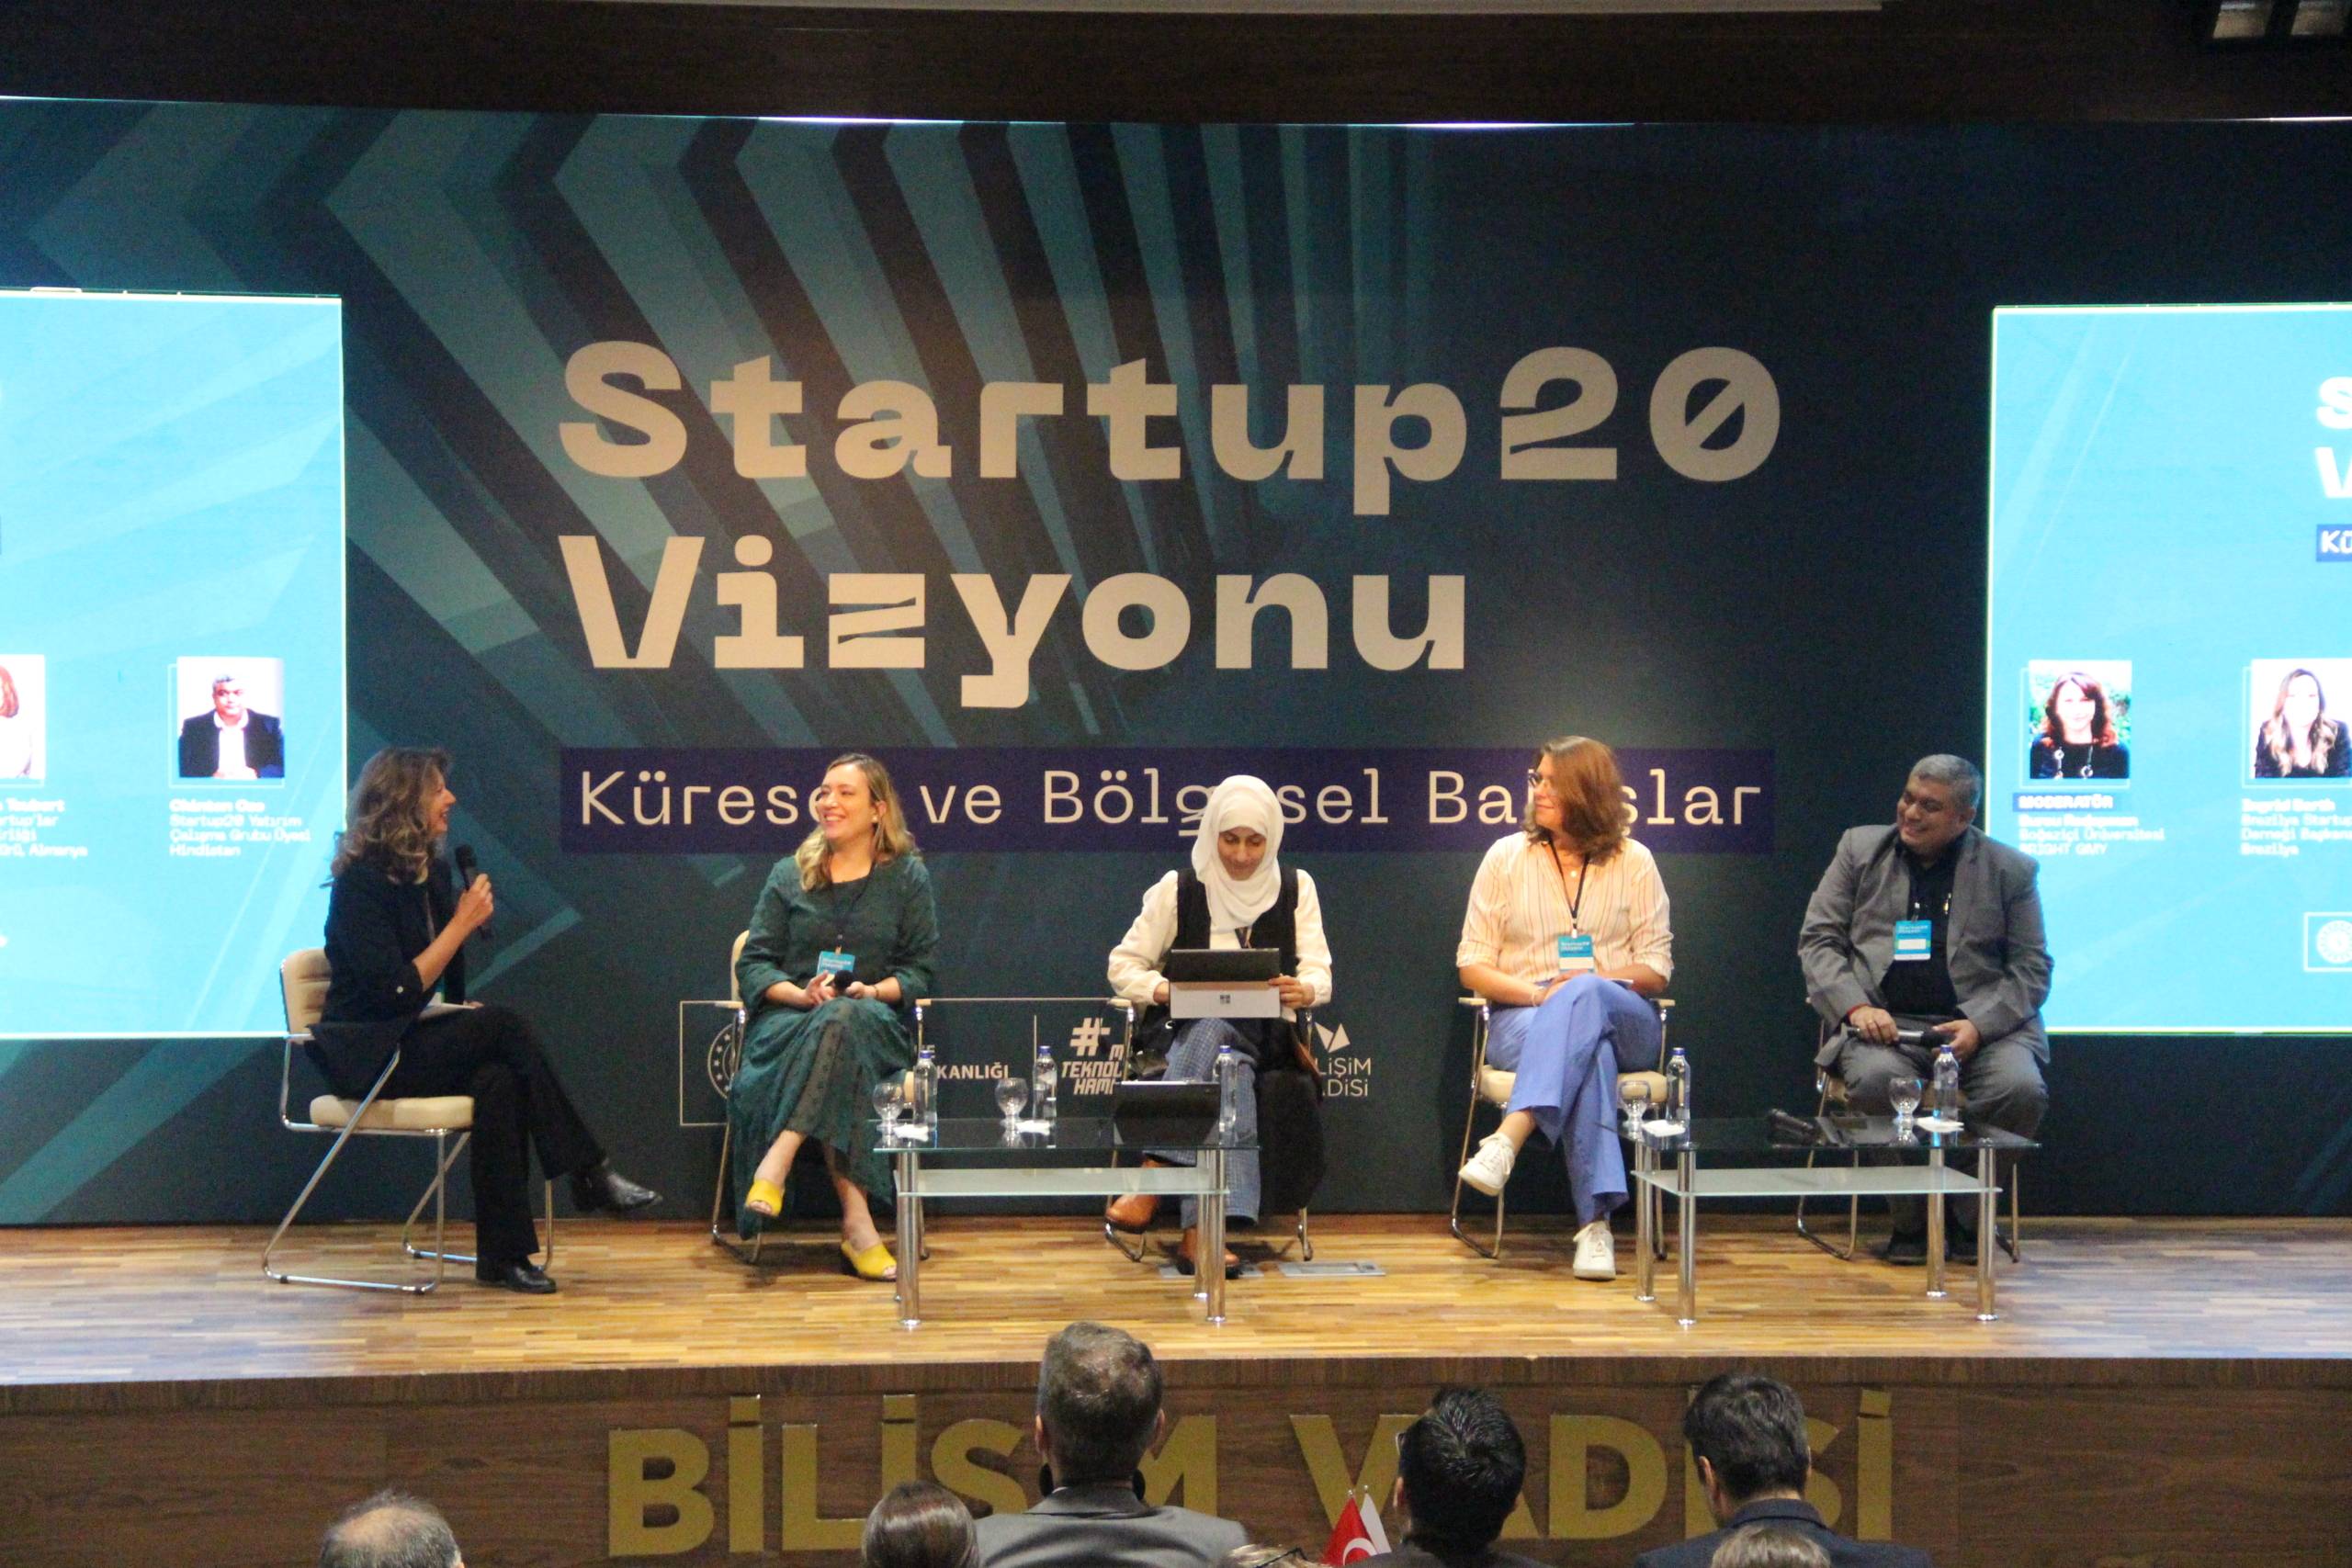 Startup20 zirvesi Bilişim Vadisi’nde düzenlendi